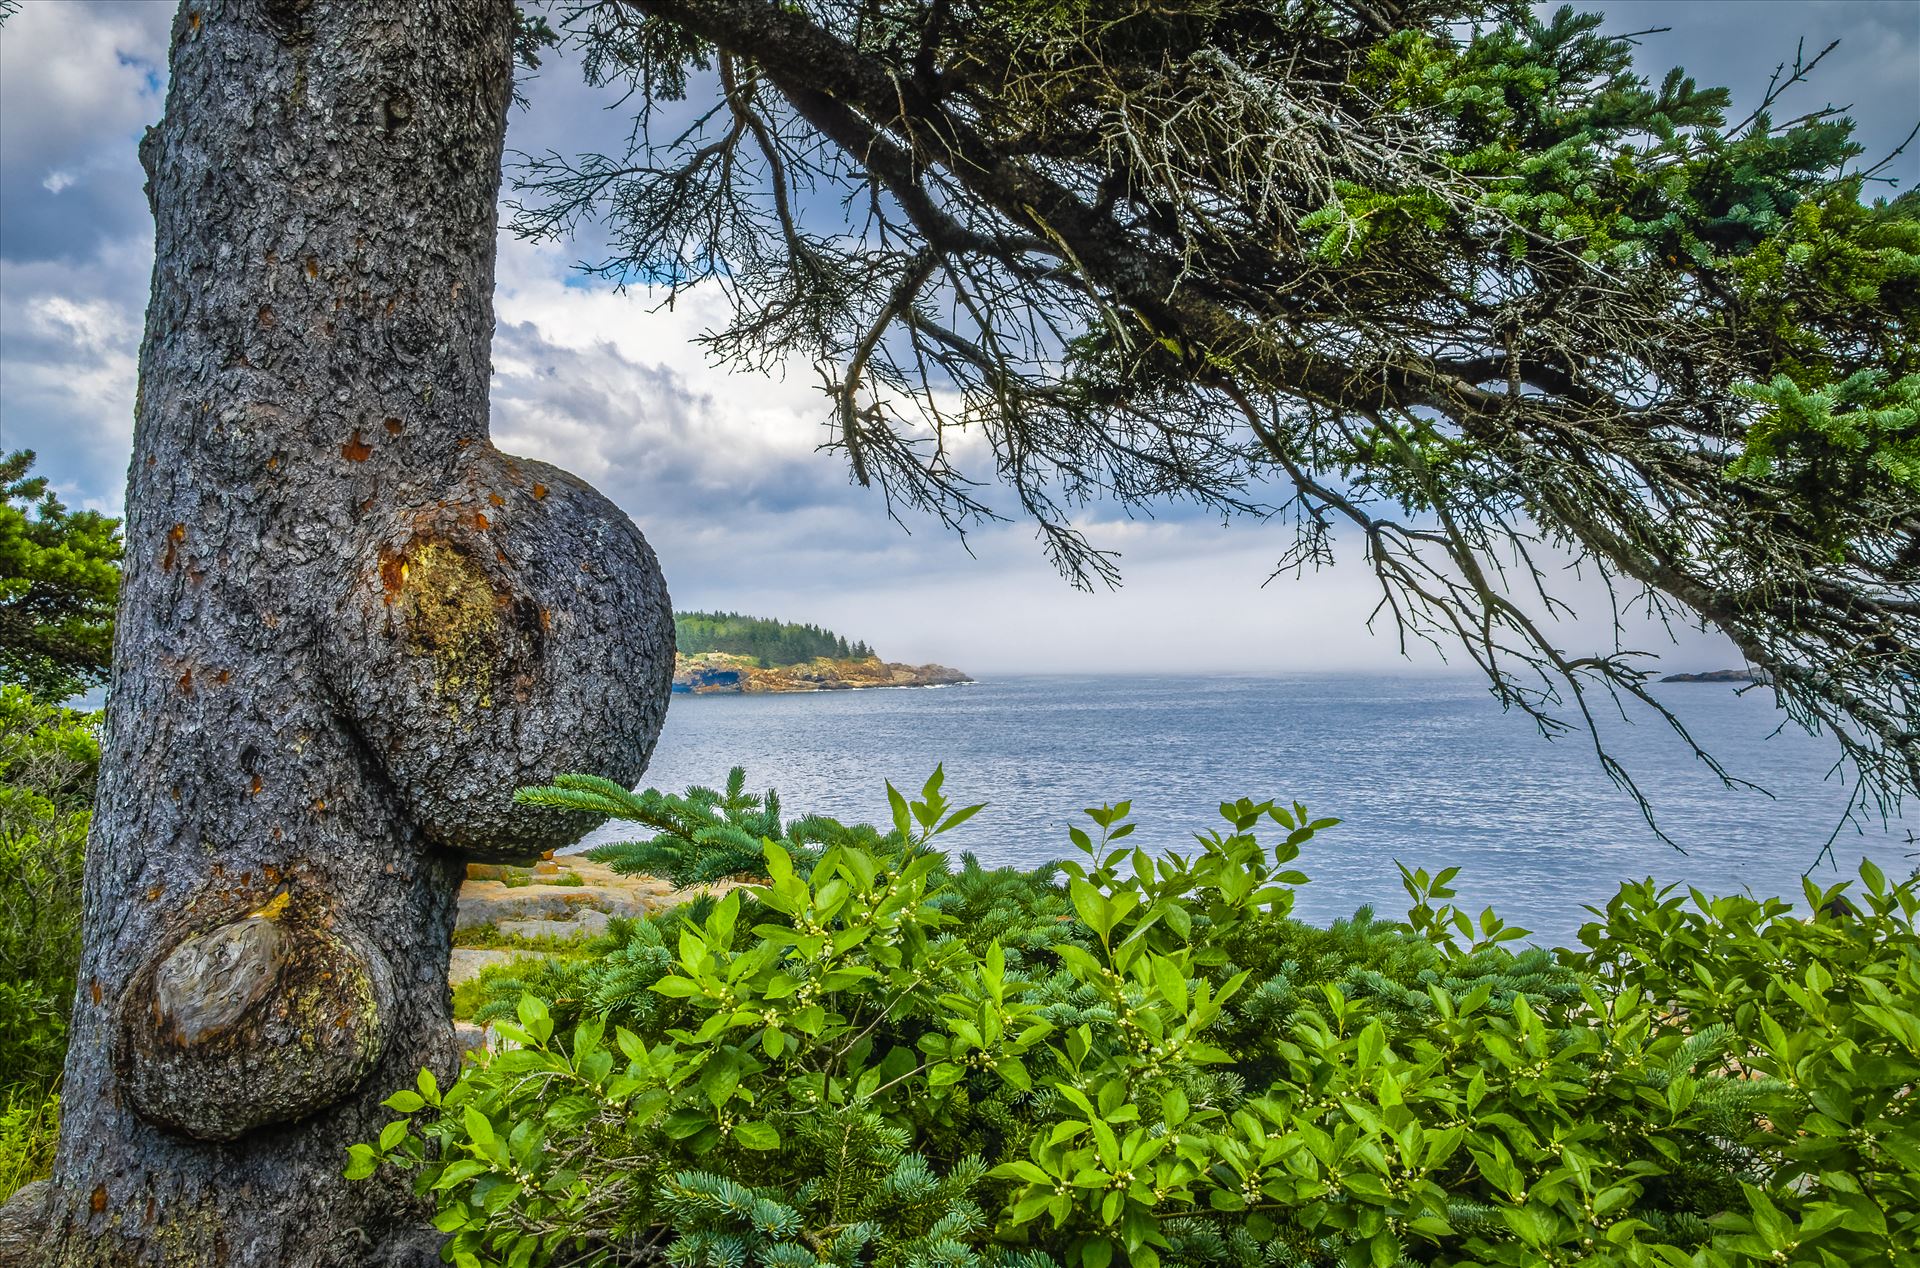 Knobby Tree at Acadia - Acadia National Park, Maine by Buckmaster